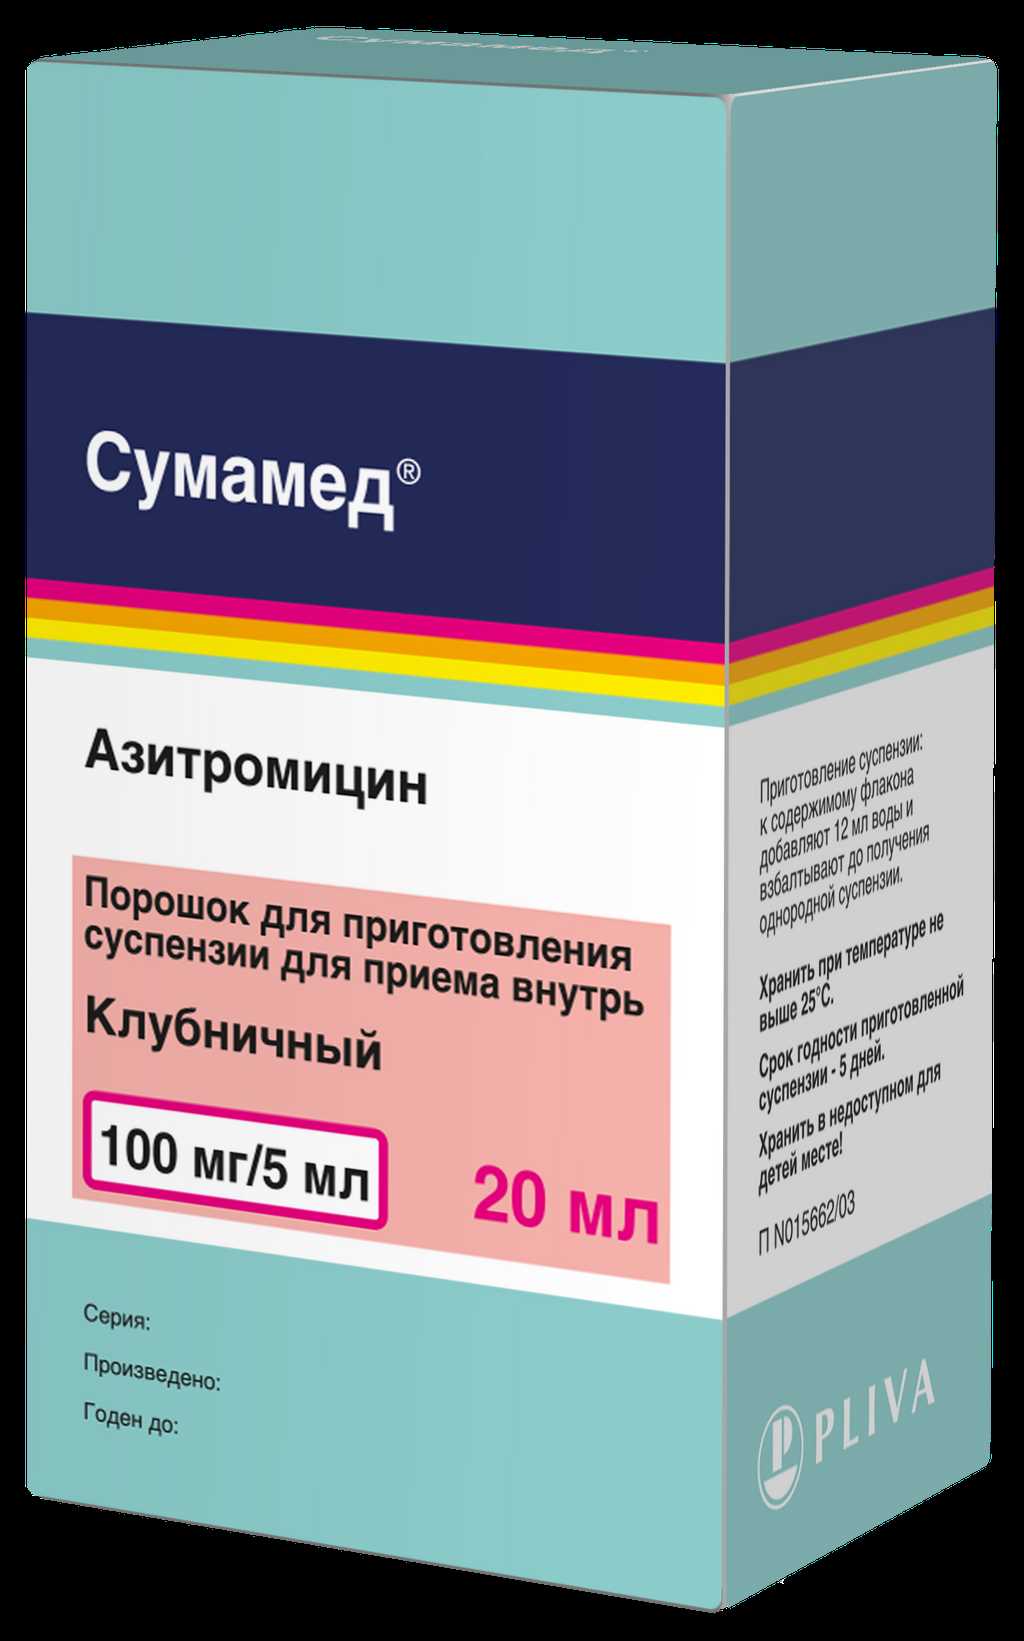 Сумамед — эффективное лекарство от бактериальной инфекции с широким спектром действия поможет в борьбе с бактериями!